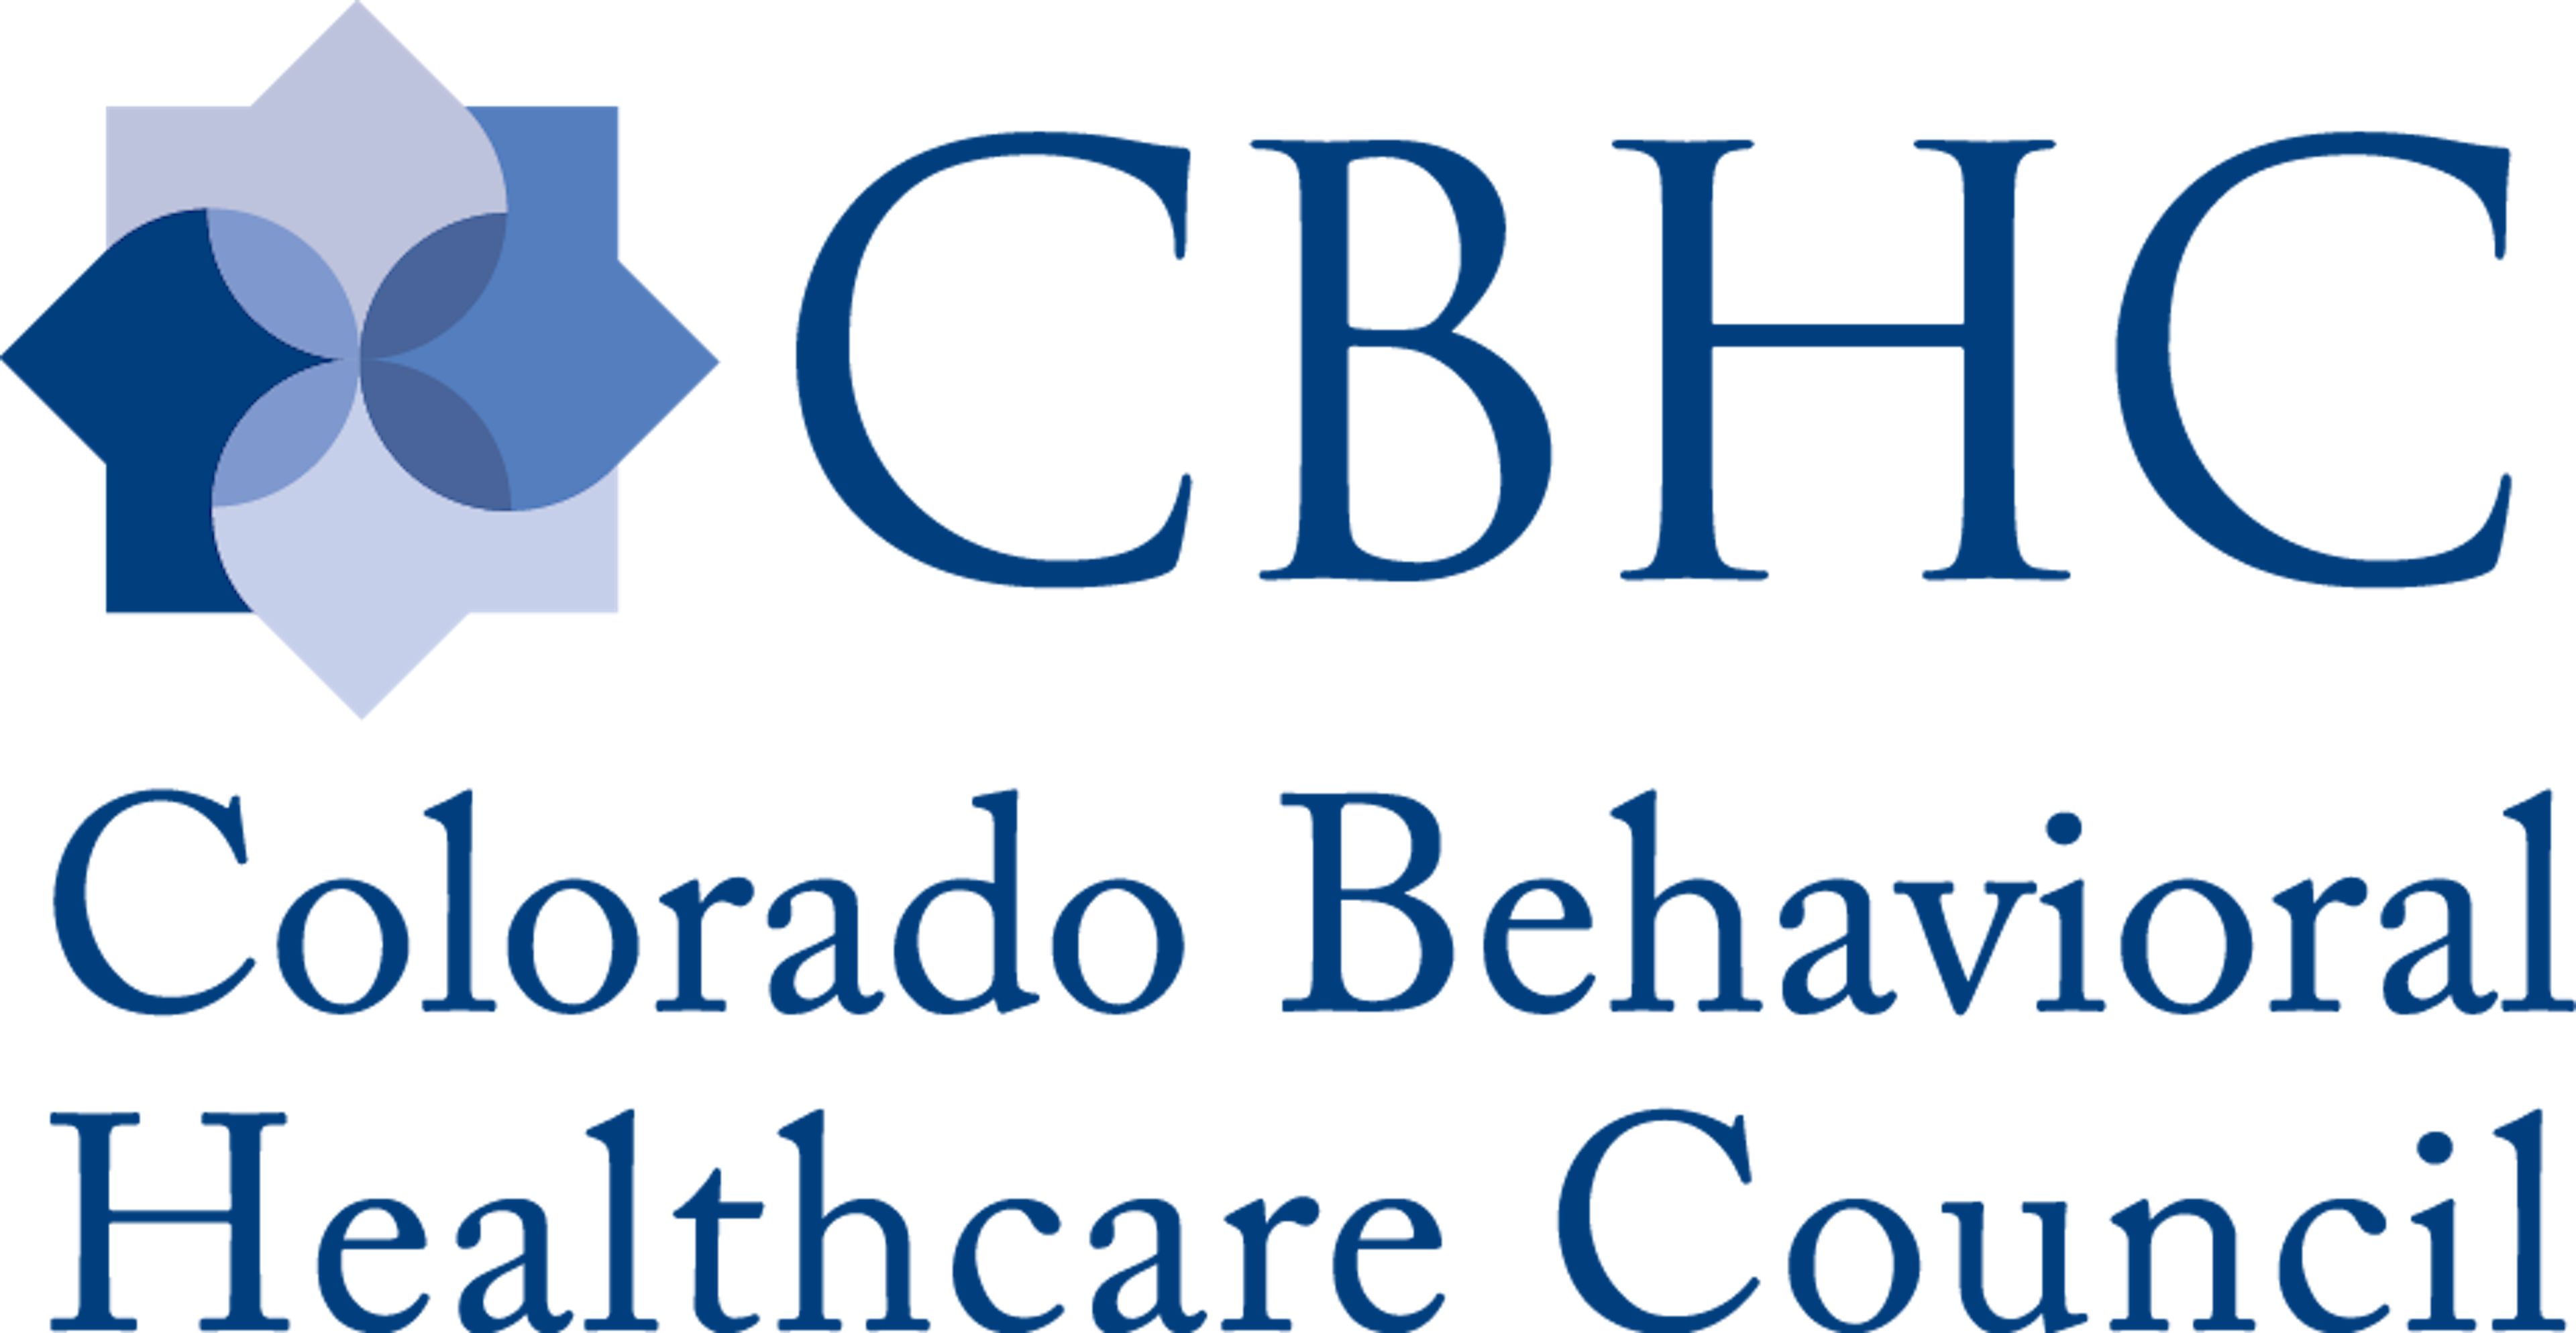 Colorado Behavioral Healthcare Council Logo